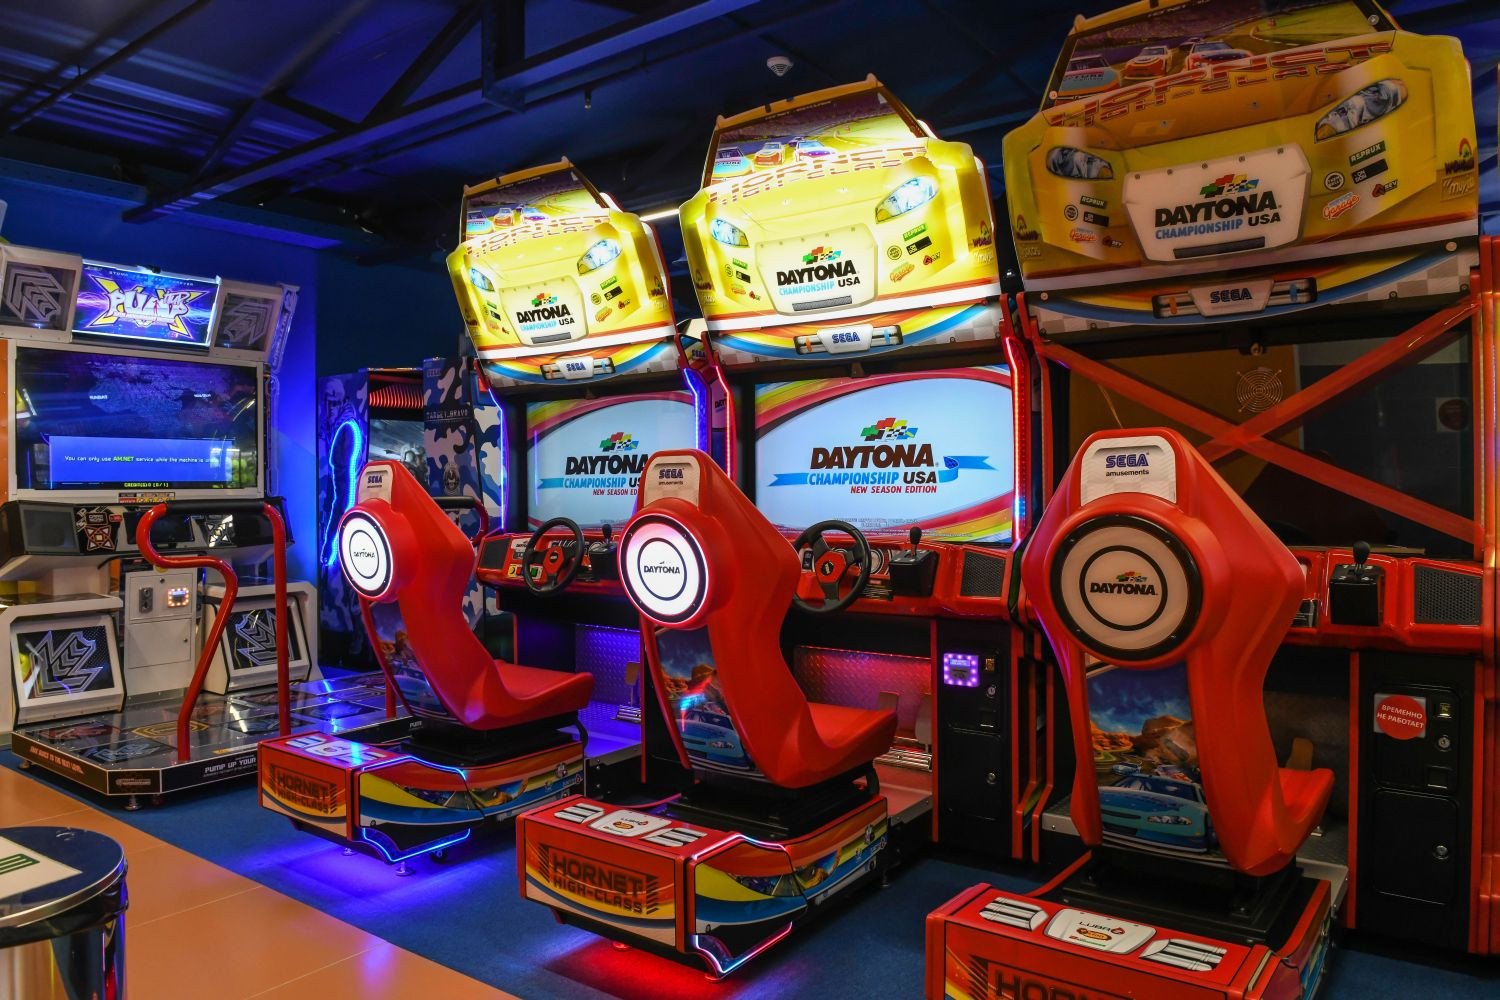 развлекательный центр с игровыми автоматами в москве для детей и взрослых